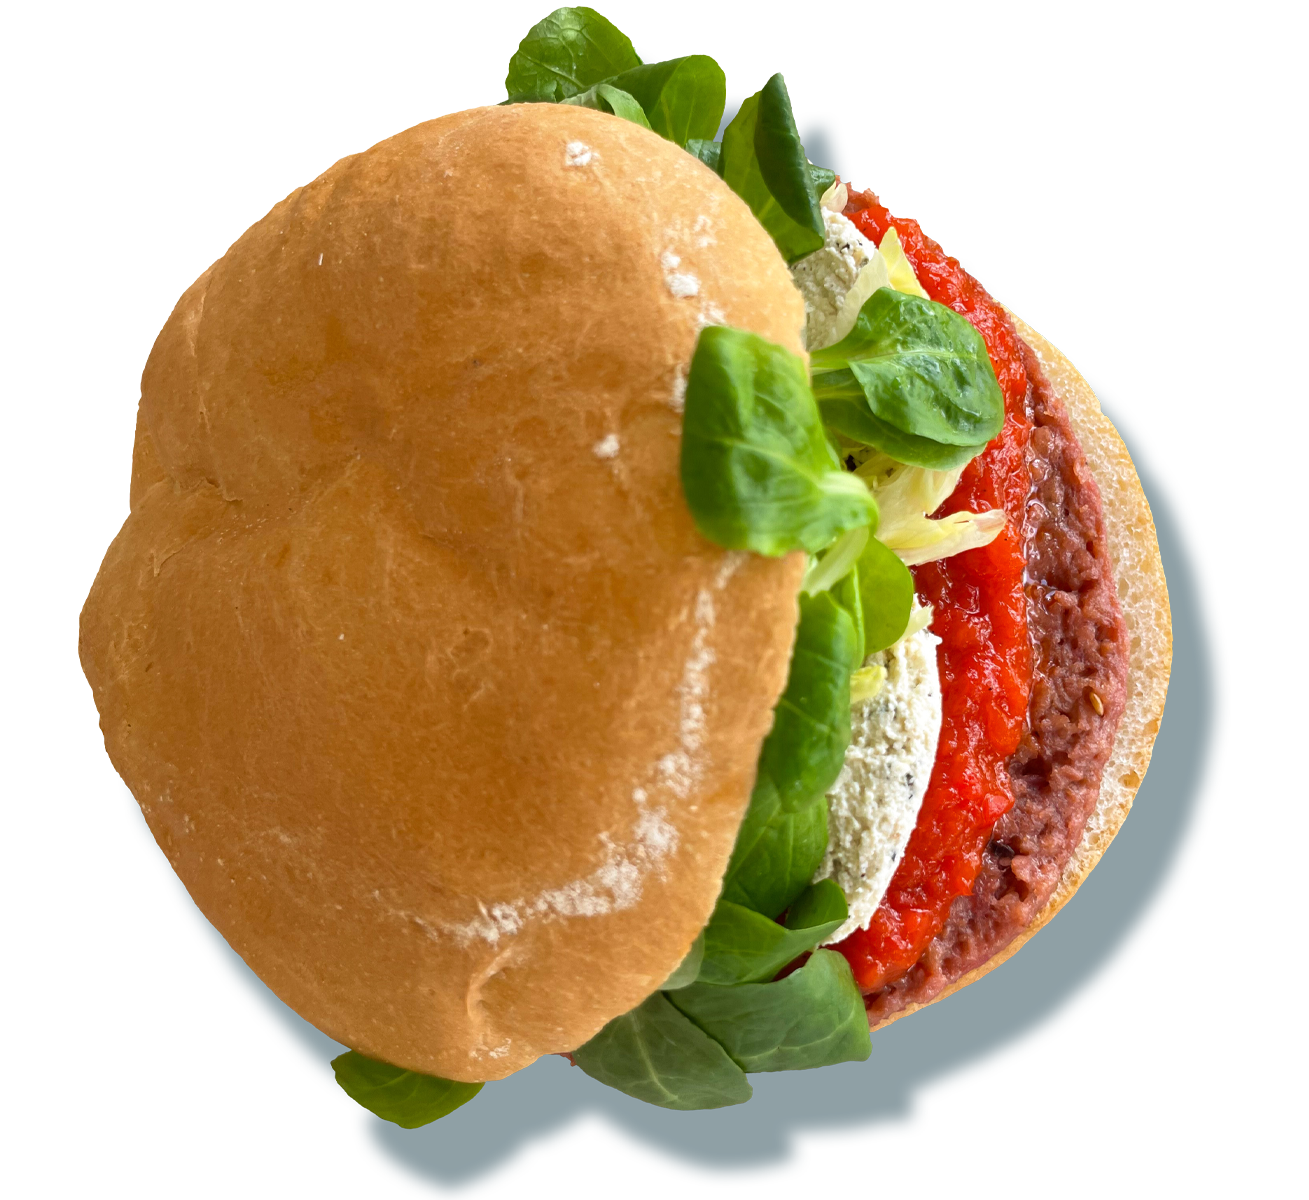 burger con pane, burger vegano (soia e patate viola), marmellata ai peperoni, insalata di germogli di soia e iceberg, ricotta veggie, side di chips